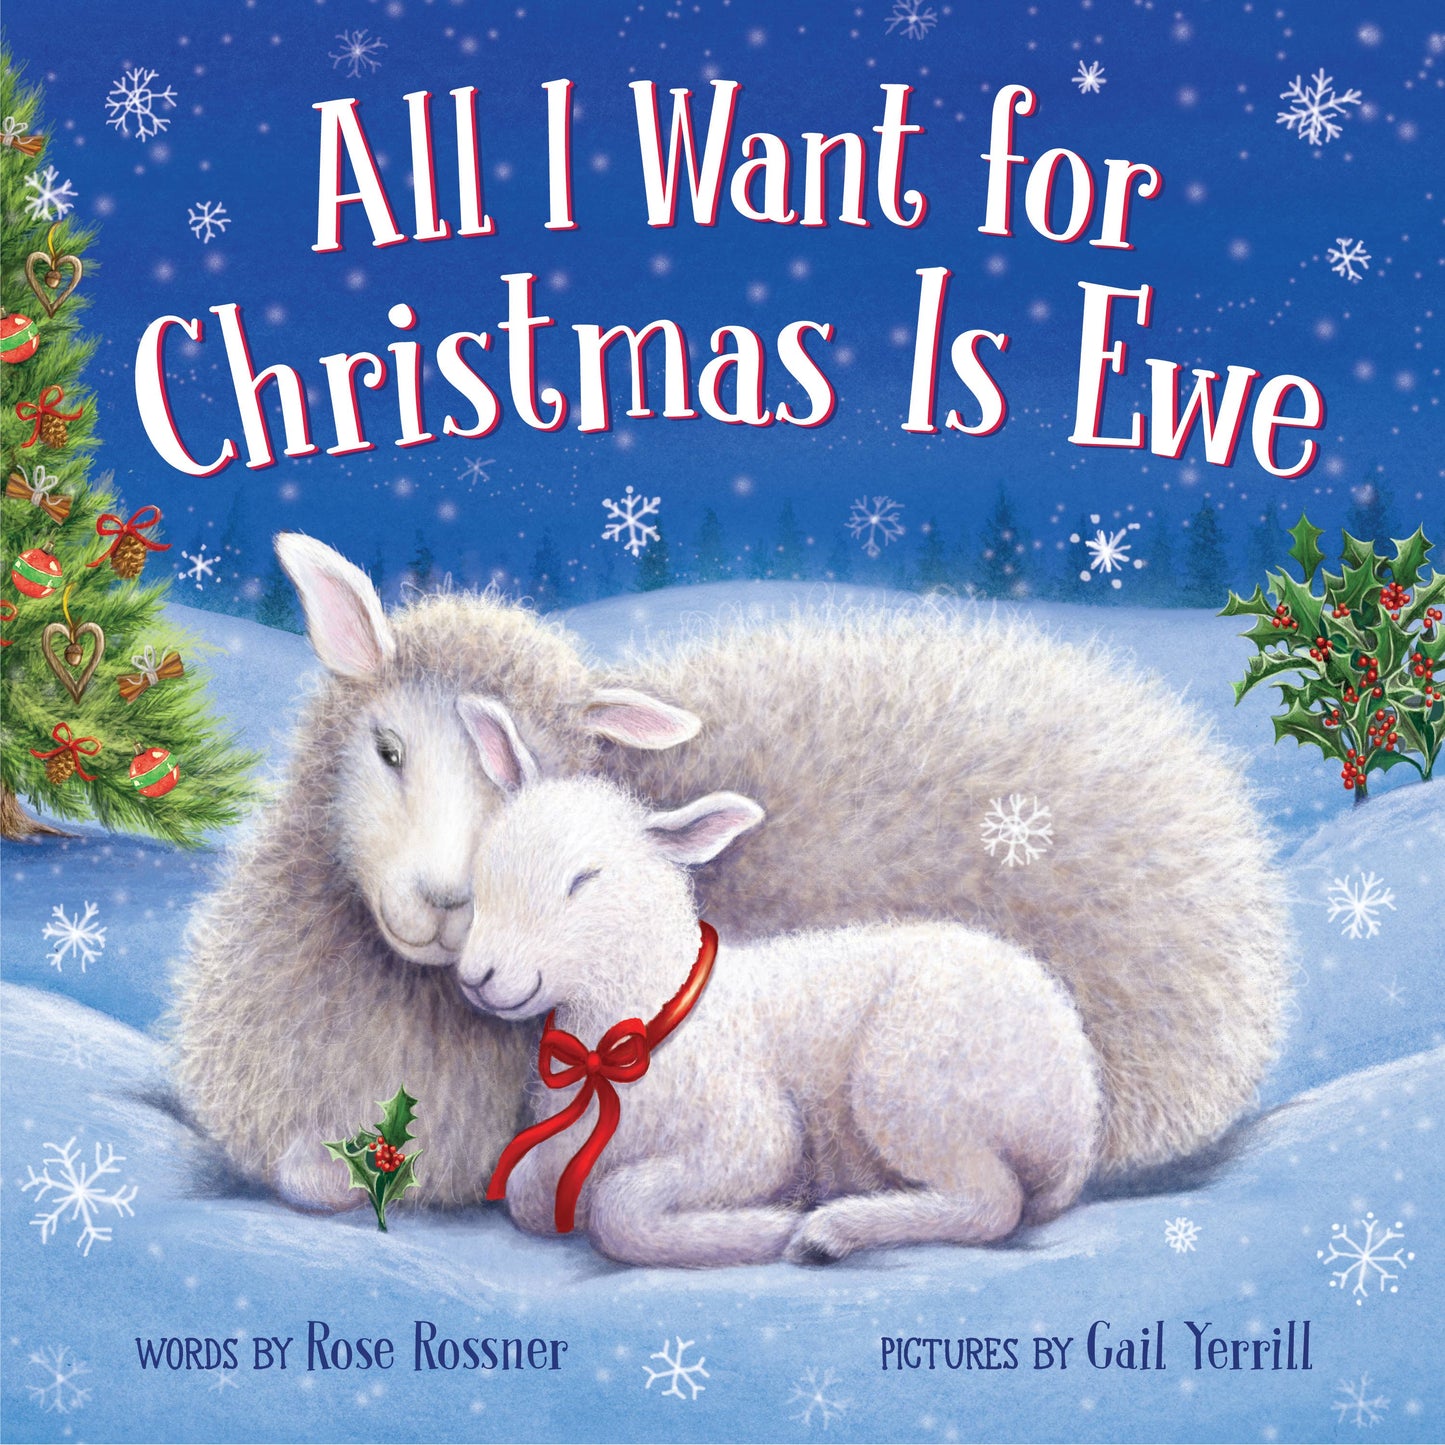 All I Want for Christmas Ewe